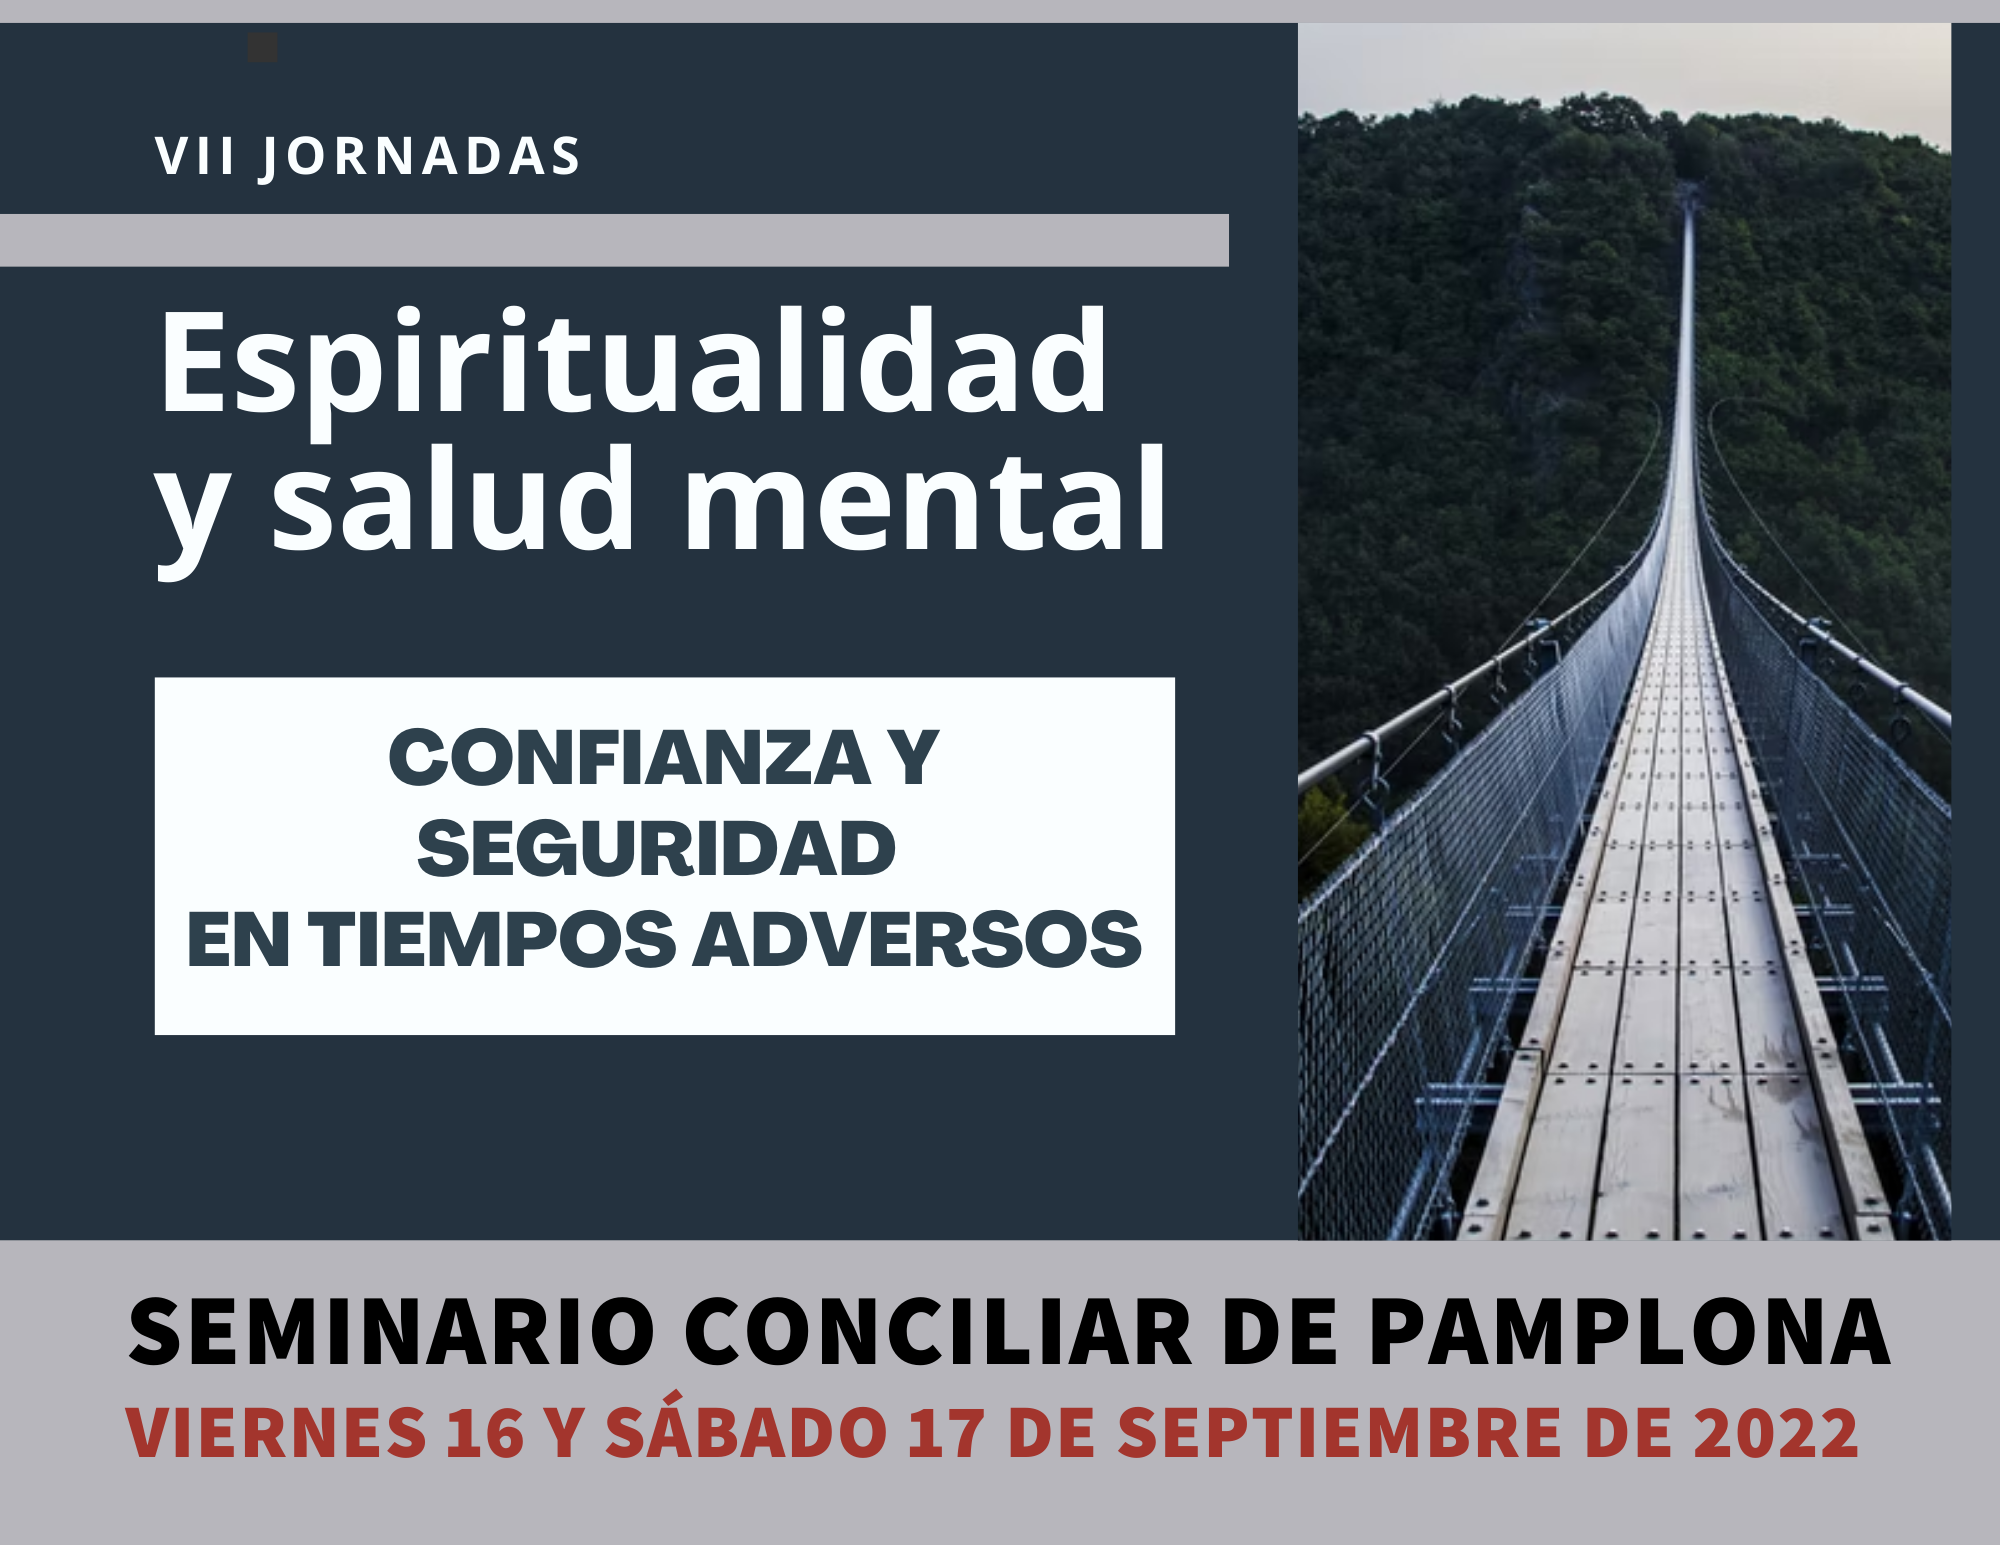 VII Jornadas sobre Espiritualidad y Salud mental